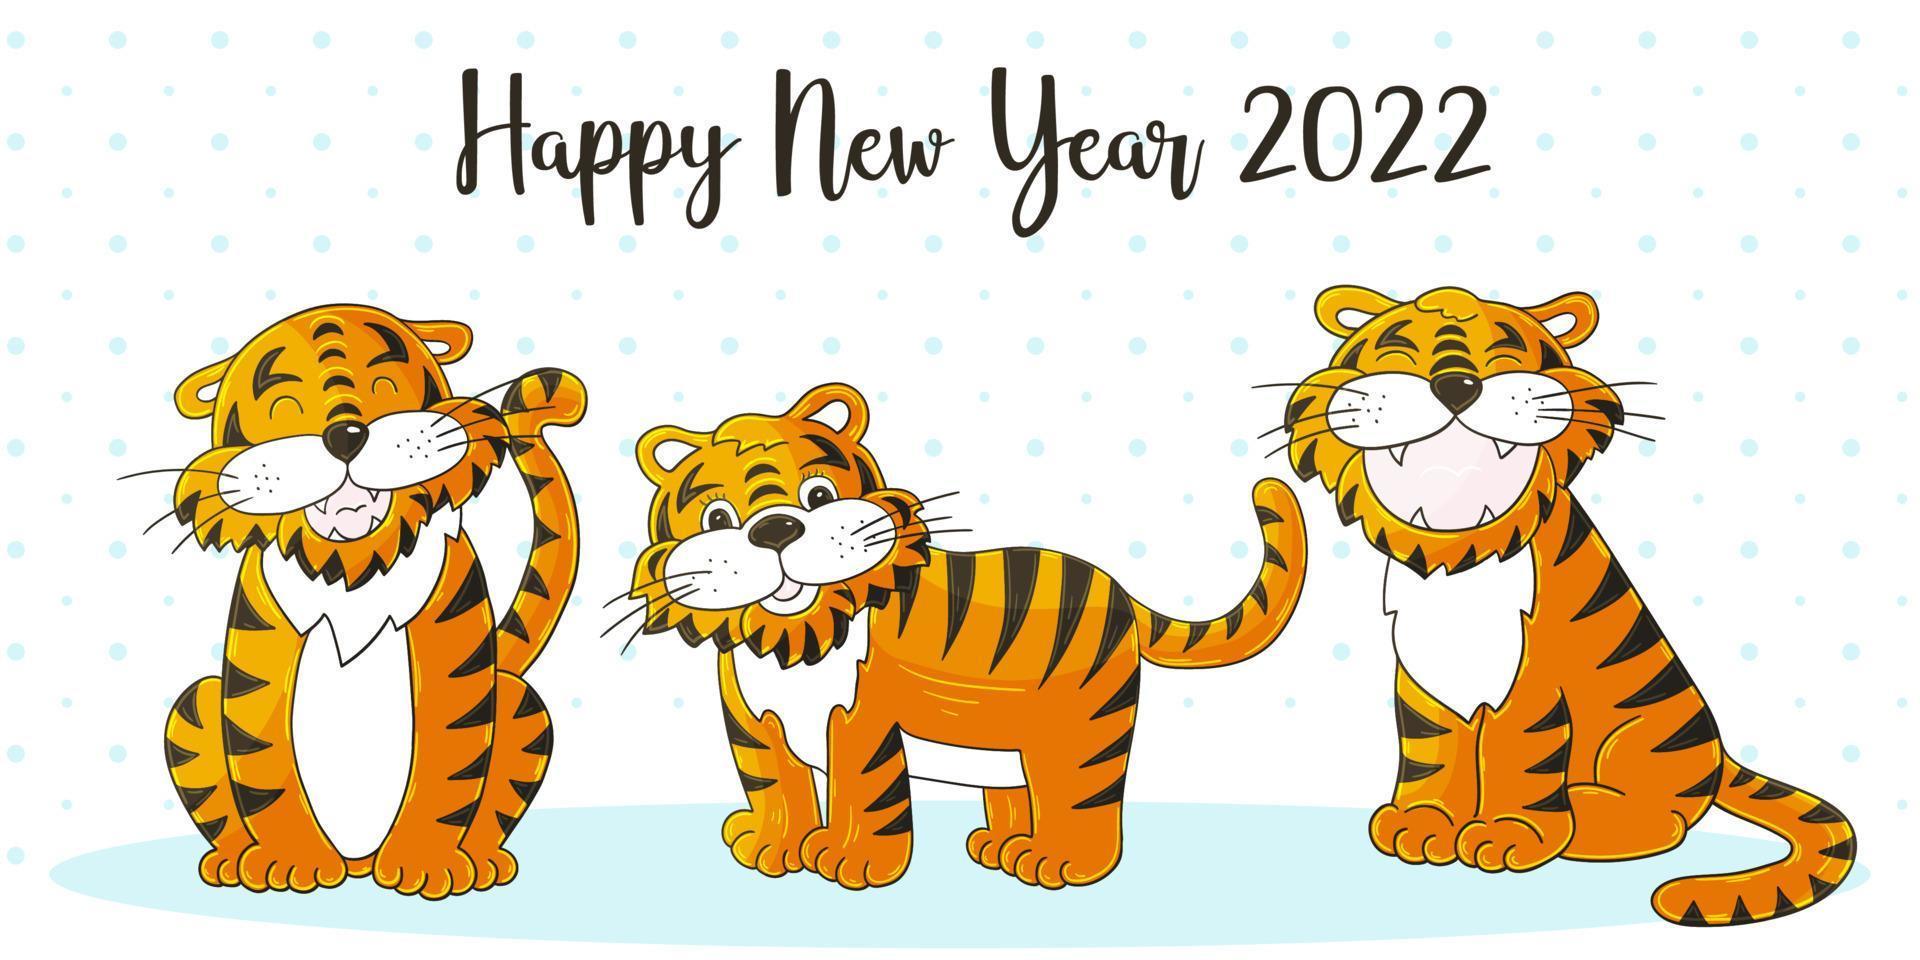 neues Jahr 2022. Cartoon-Illustration für Postkarten, Kalender, Poster vektor